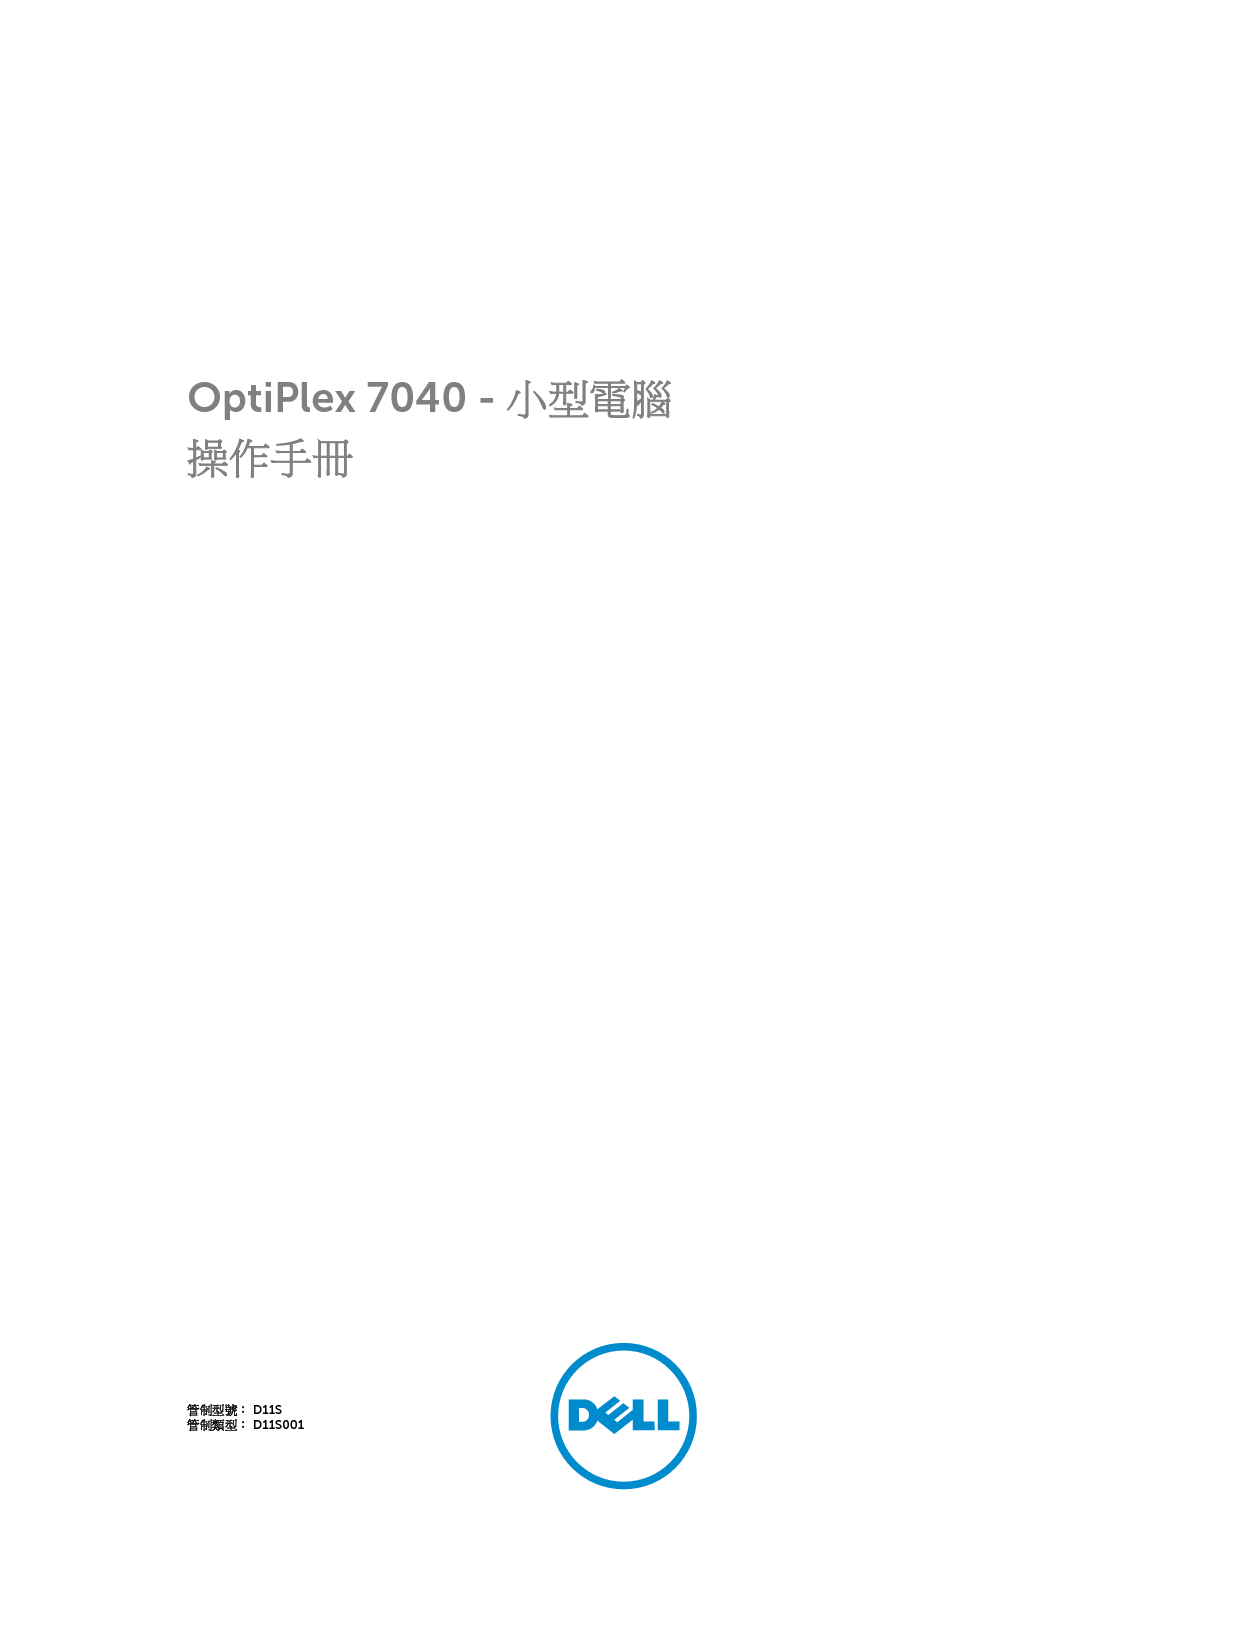 戴尔 Dell Optiplex 7040 小型 繁体 用户手册 封面